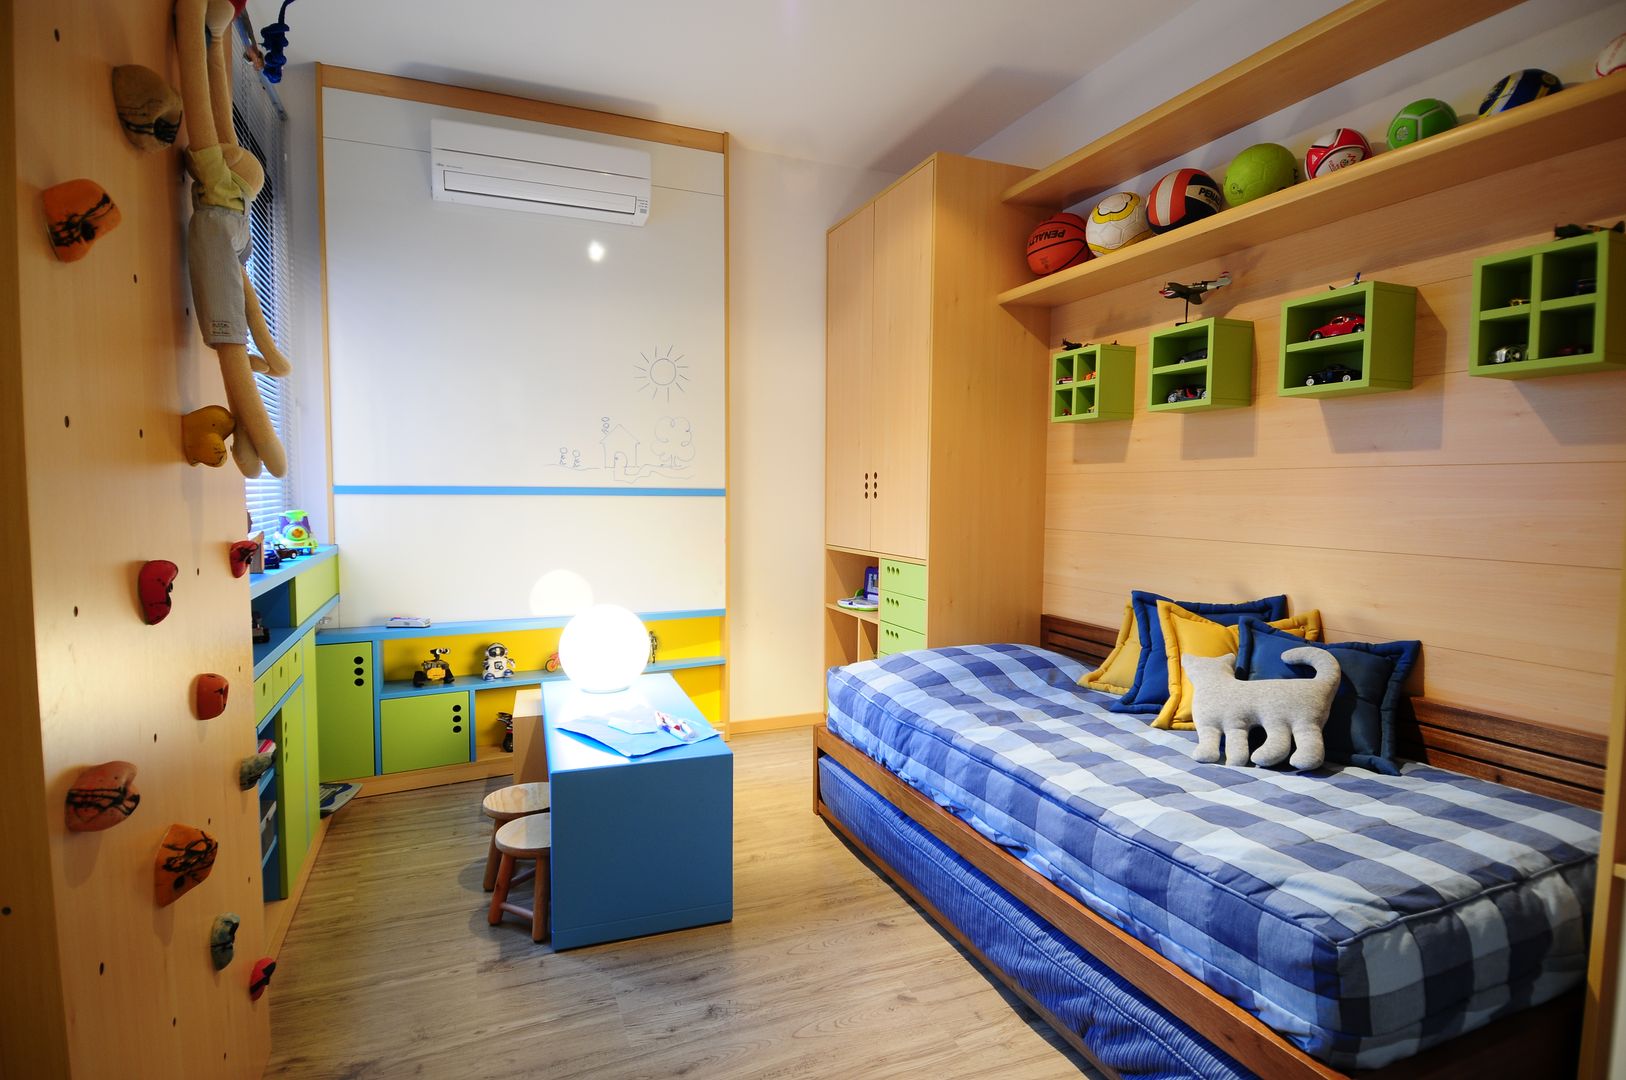 Apartamento Rio Branco., João Linck | Arquitetura João Linck | Arquitetura モダンデザインの 子供部屋